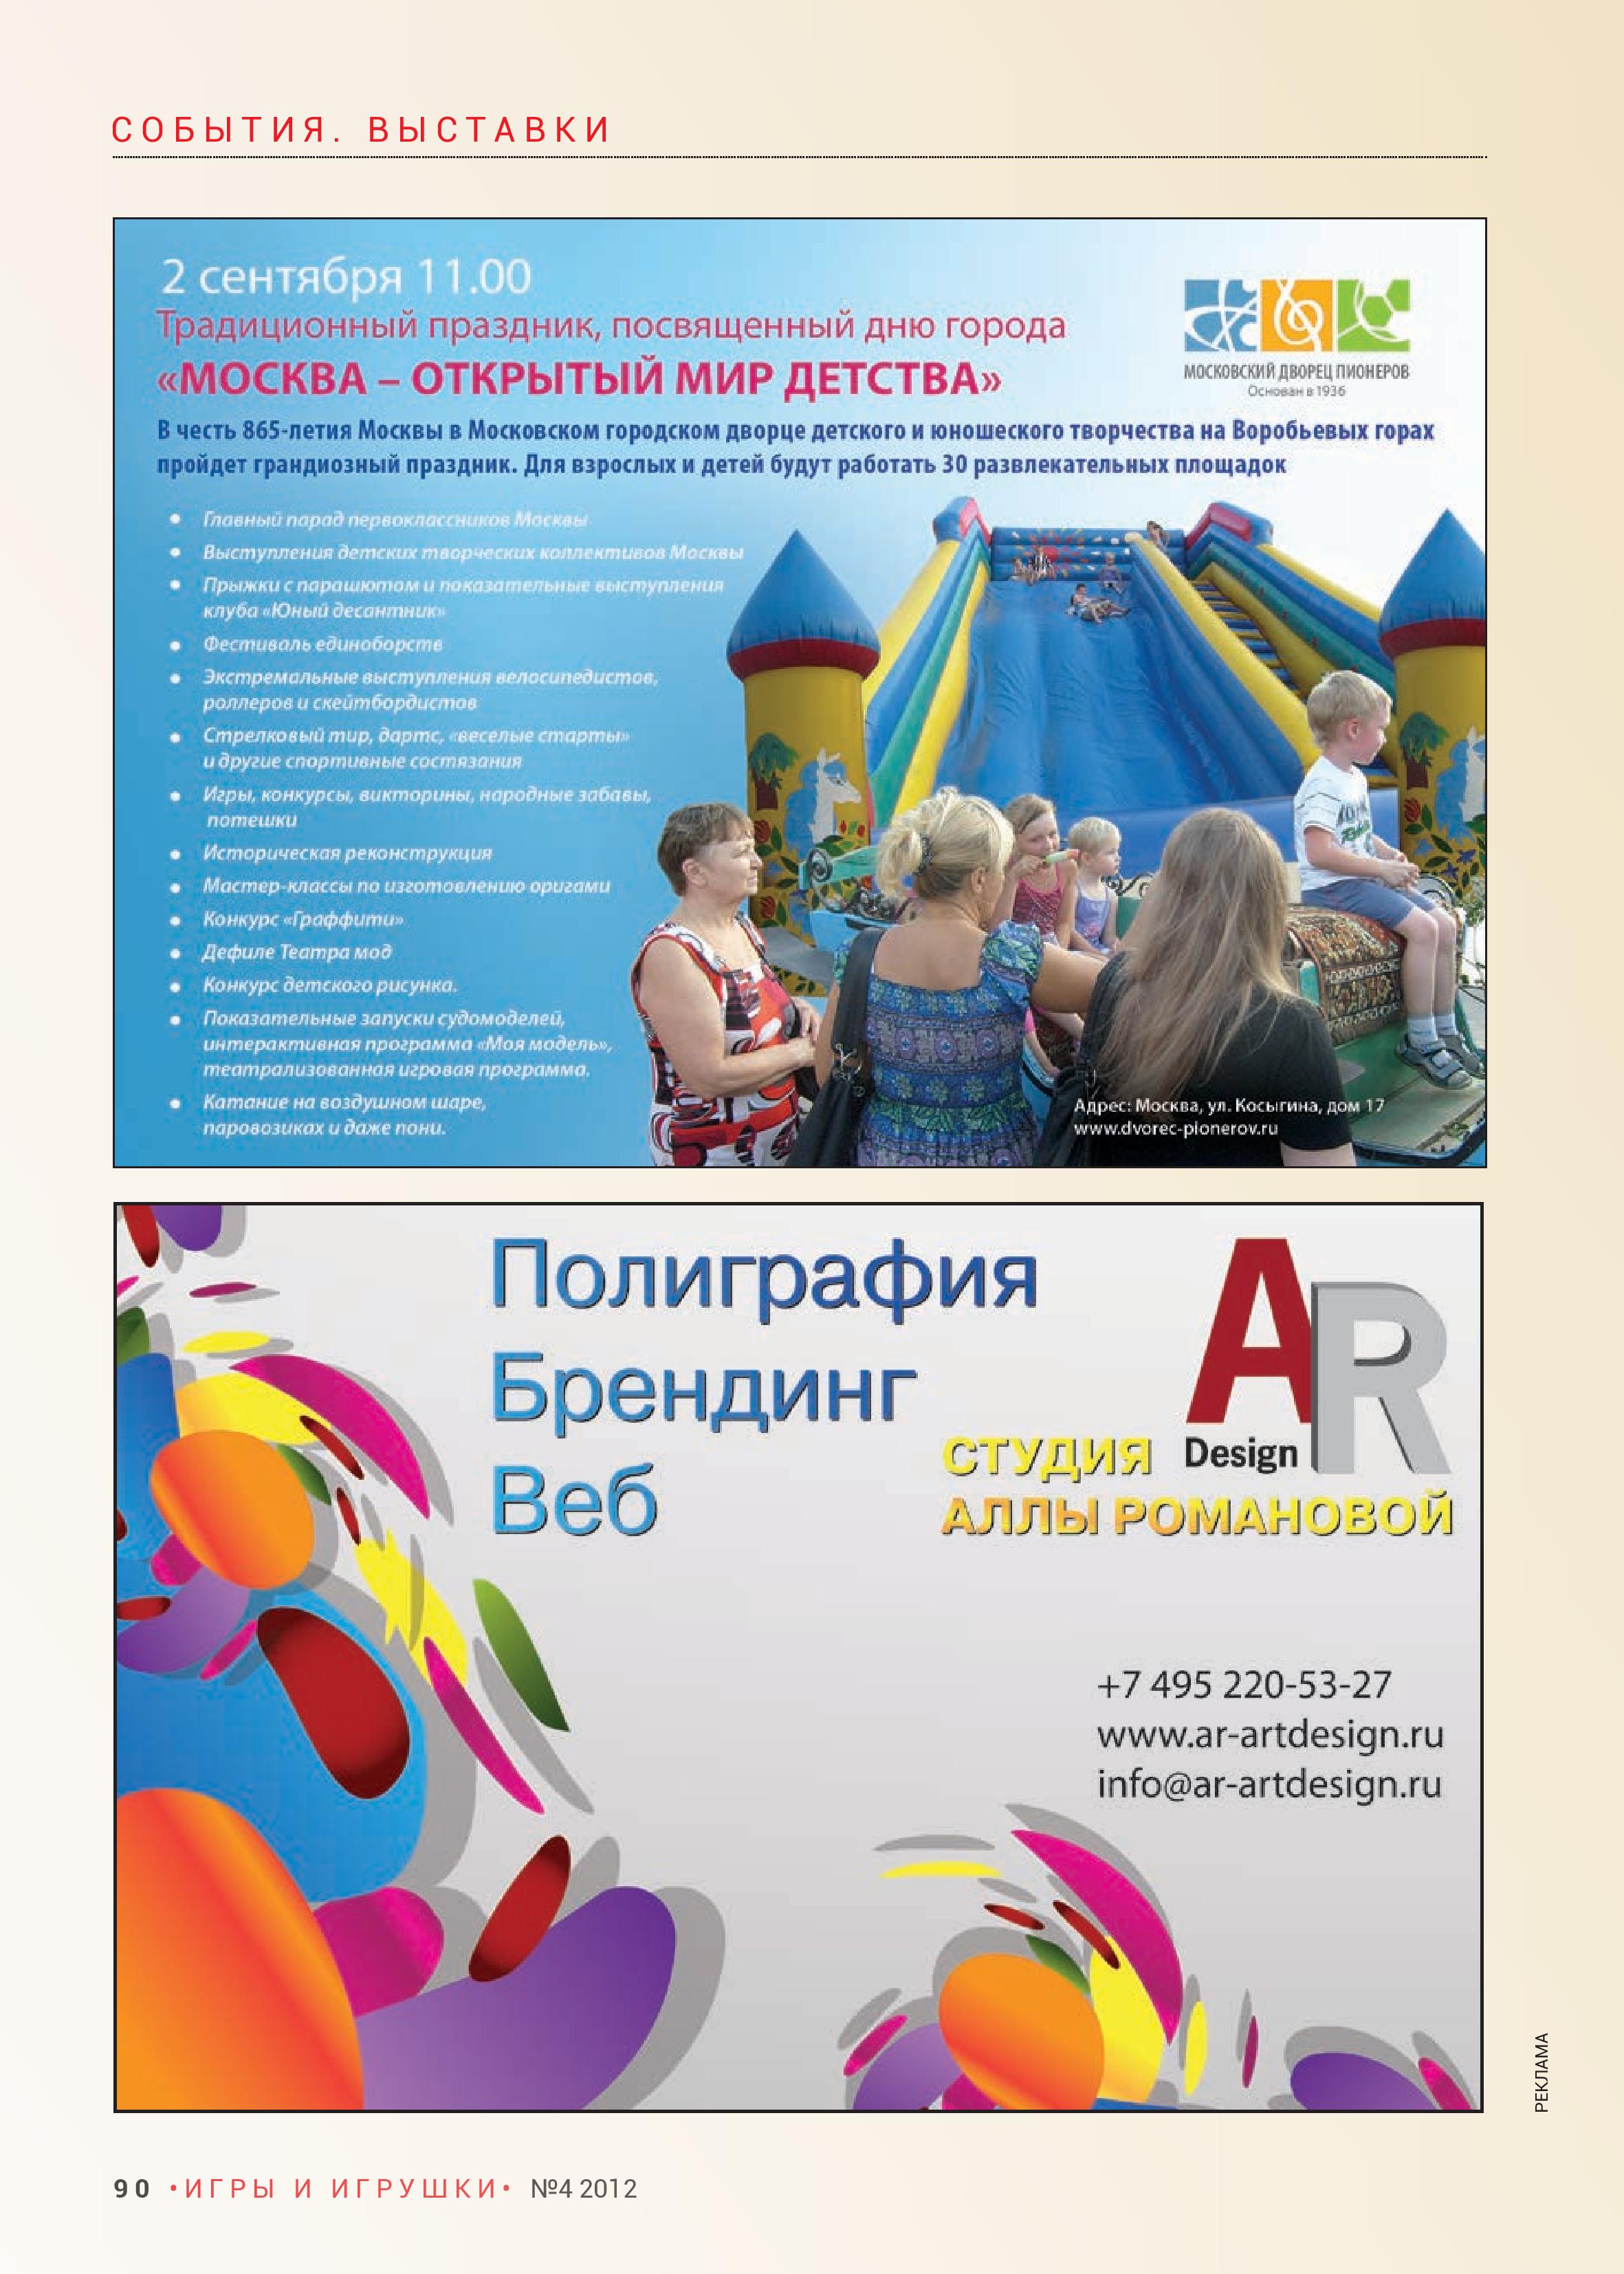 Москва - открытый мир детства